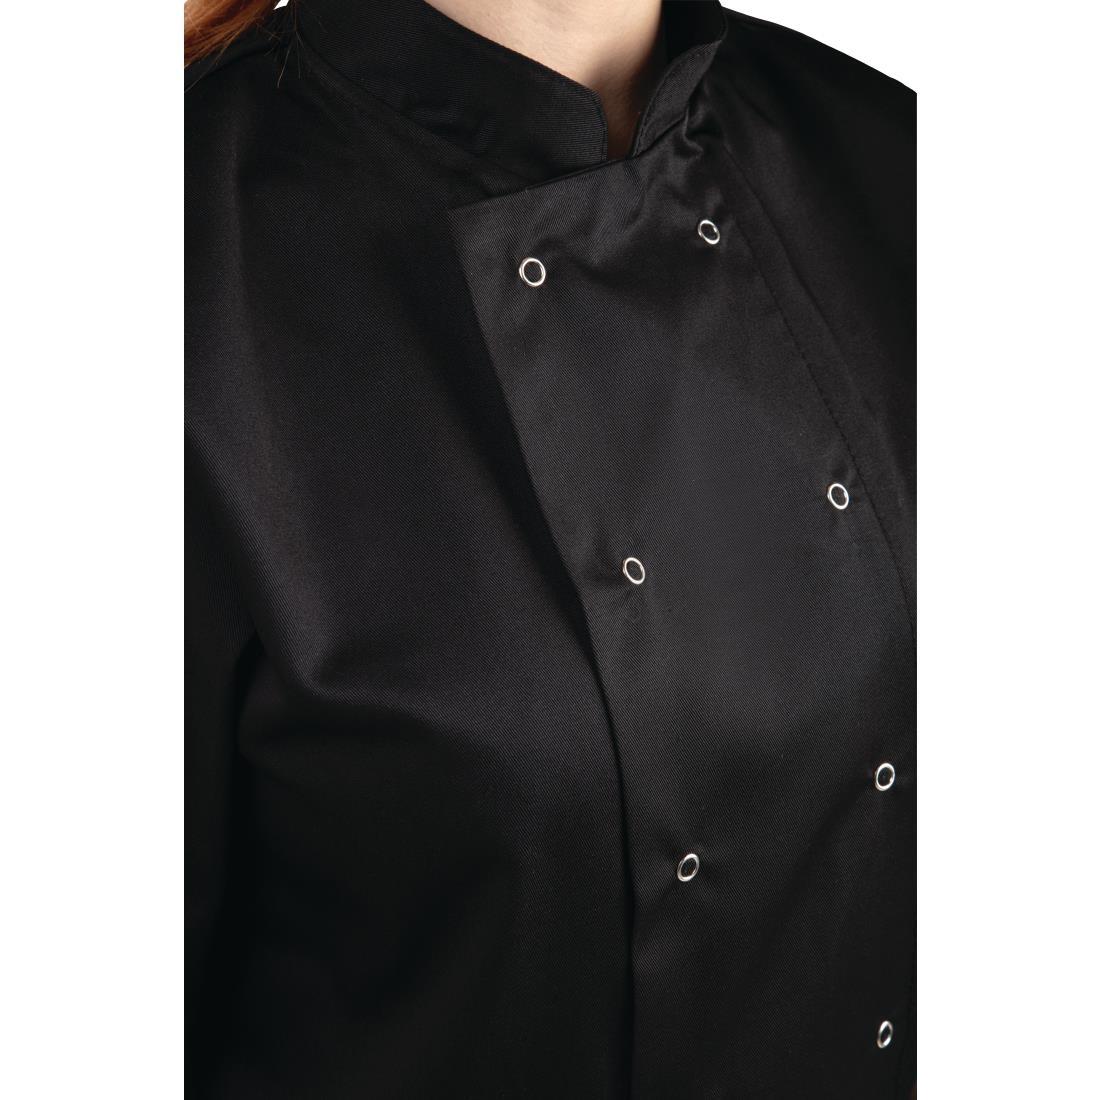 Whites Vegas Unisex Chefs Jacket Short Sleeve Black 5XL - A439-5XL  - 3